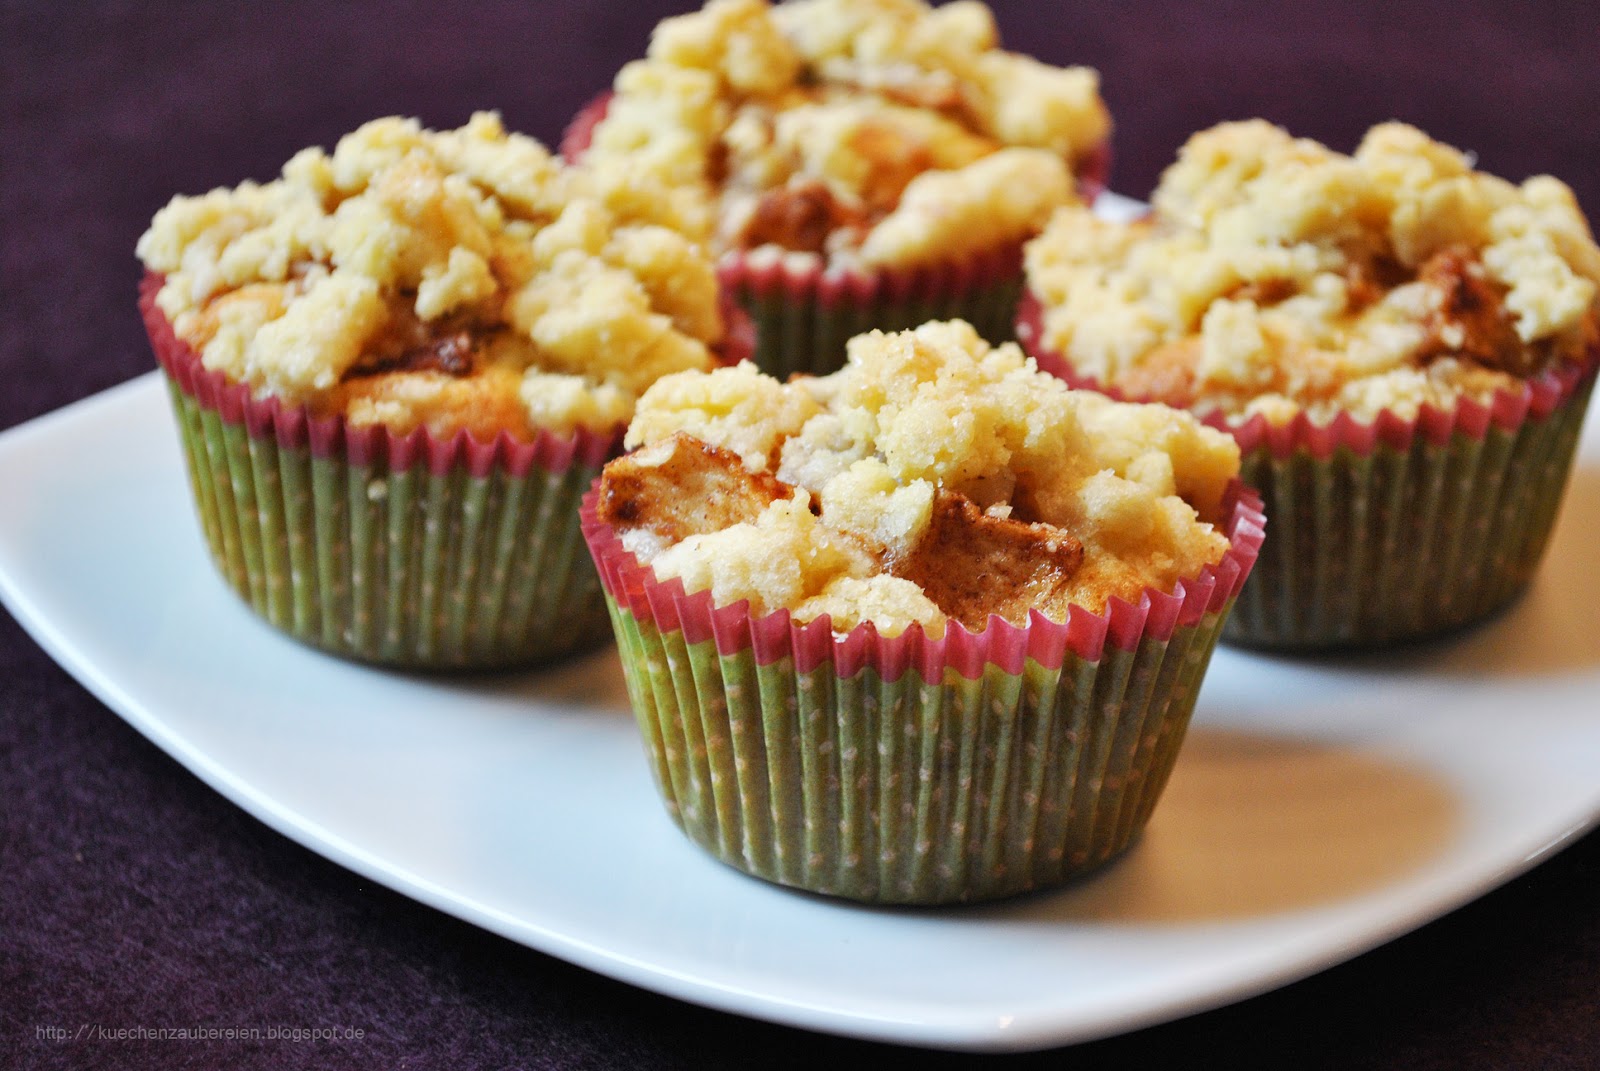 Küchenzaubereien: Winterliche Apfel-Streusel-Muffins mit Marzipan